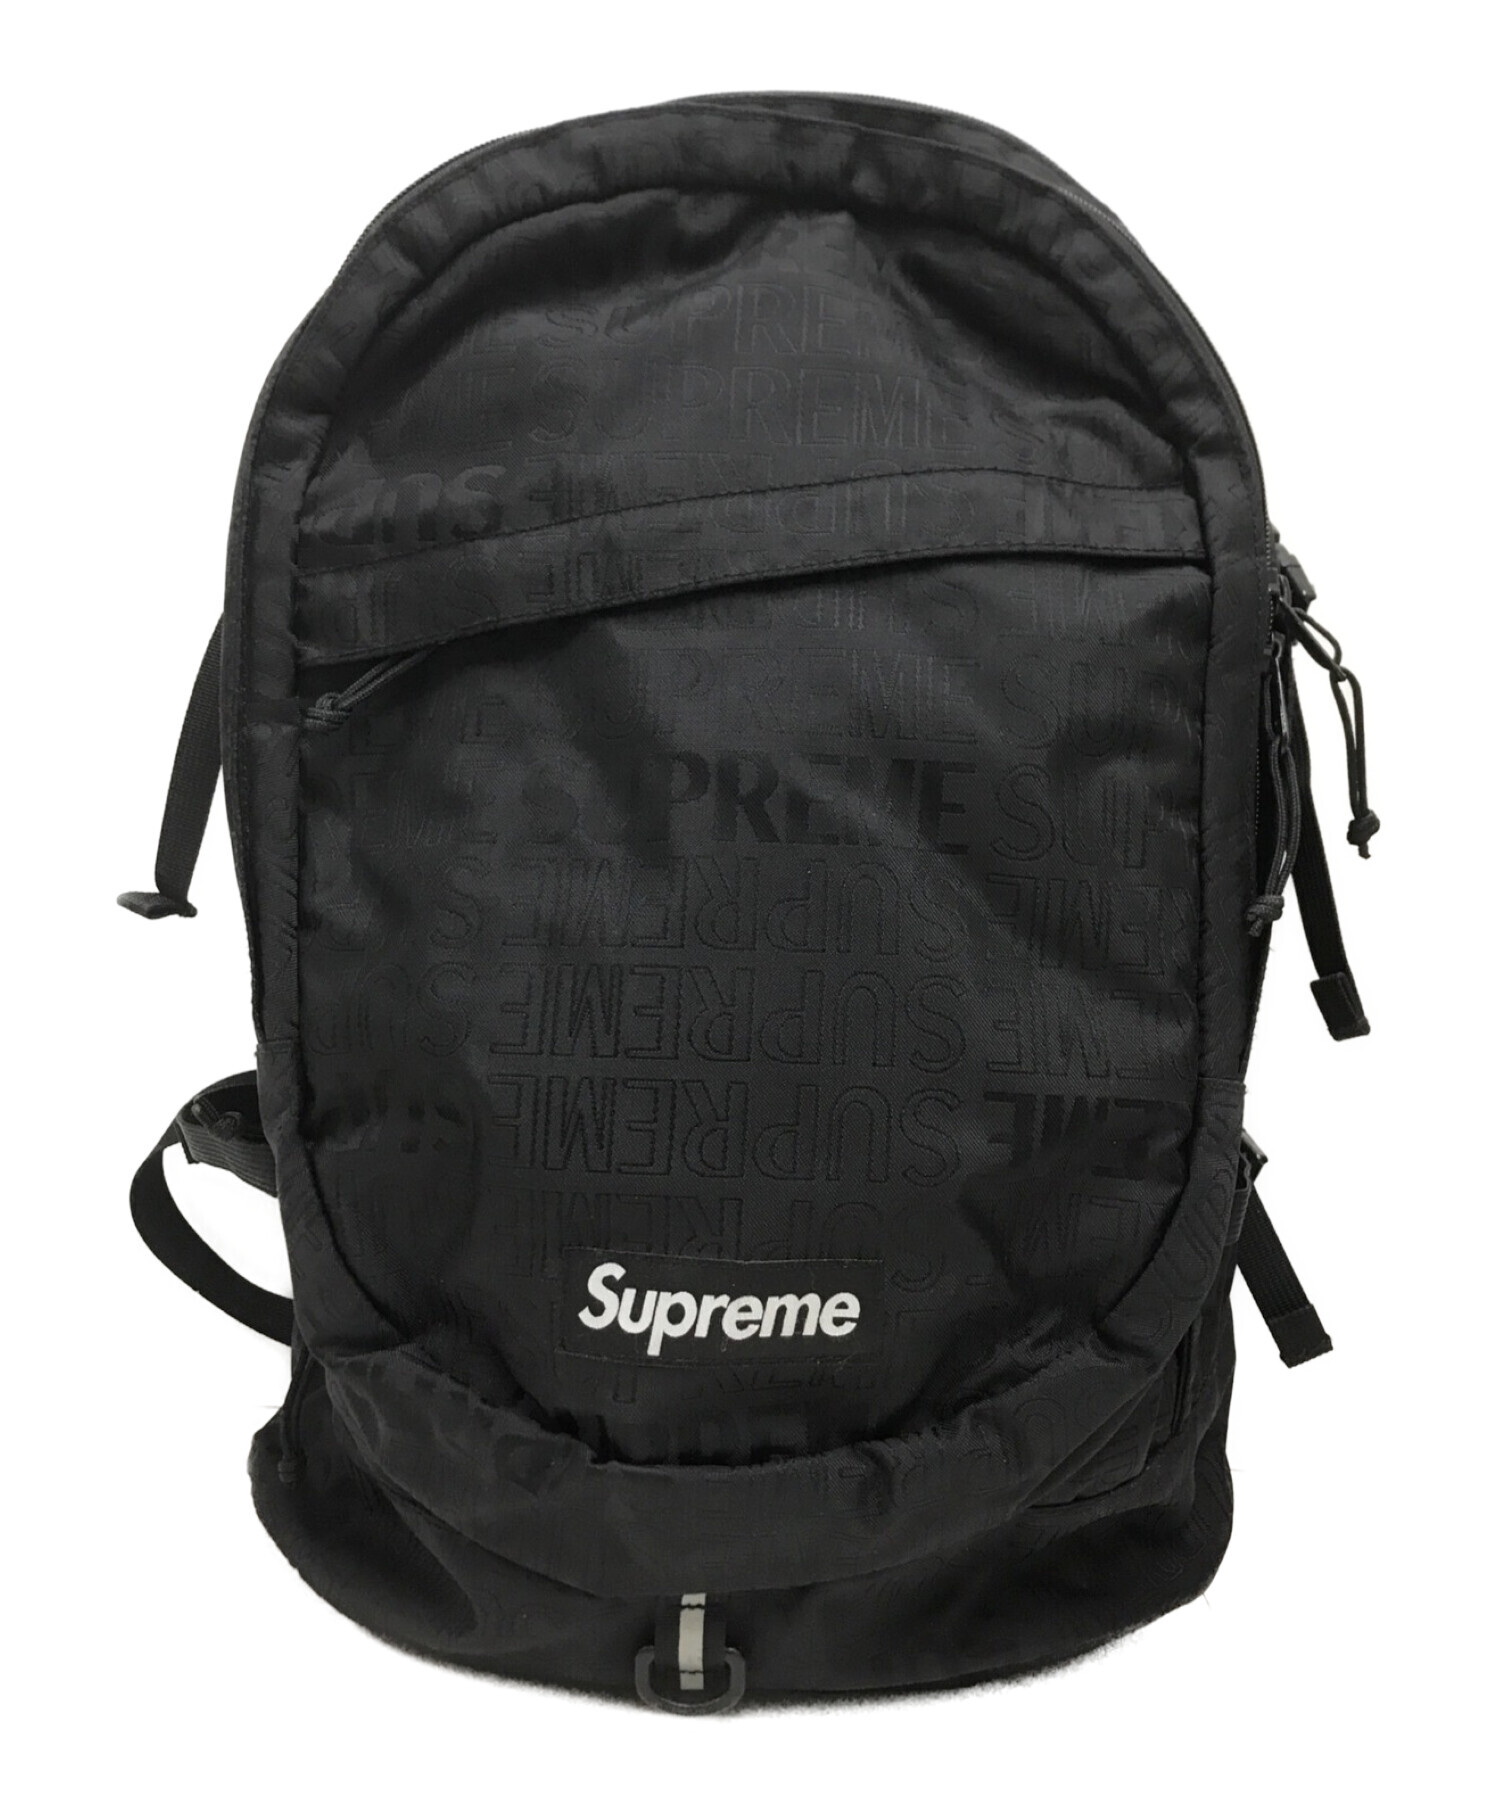 Supreme backpack 19ss - www.sorbillomenu.com